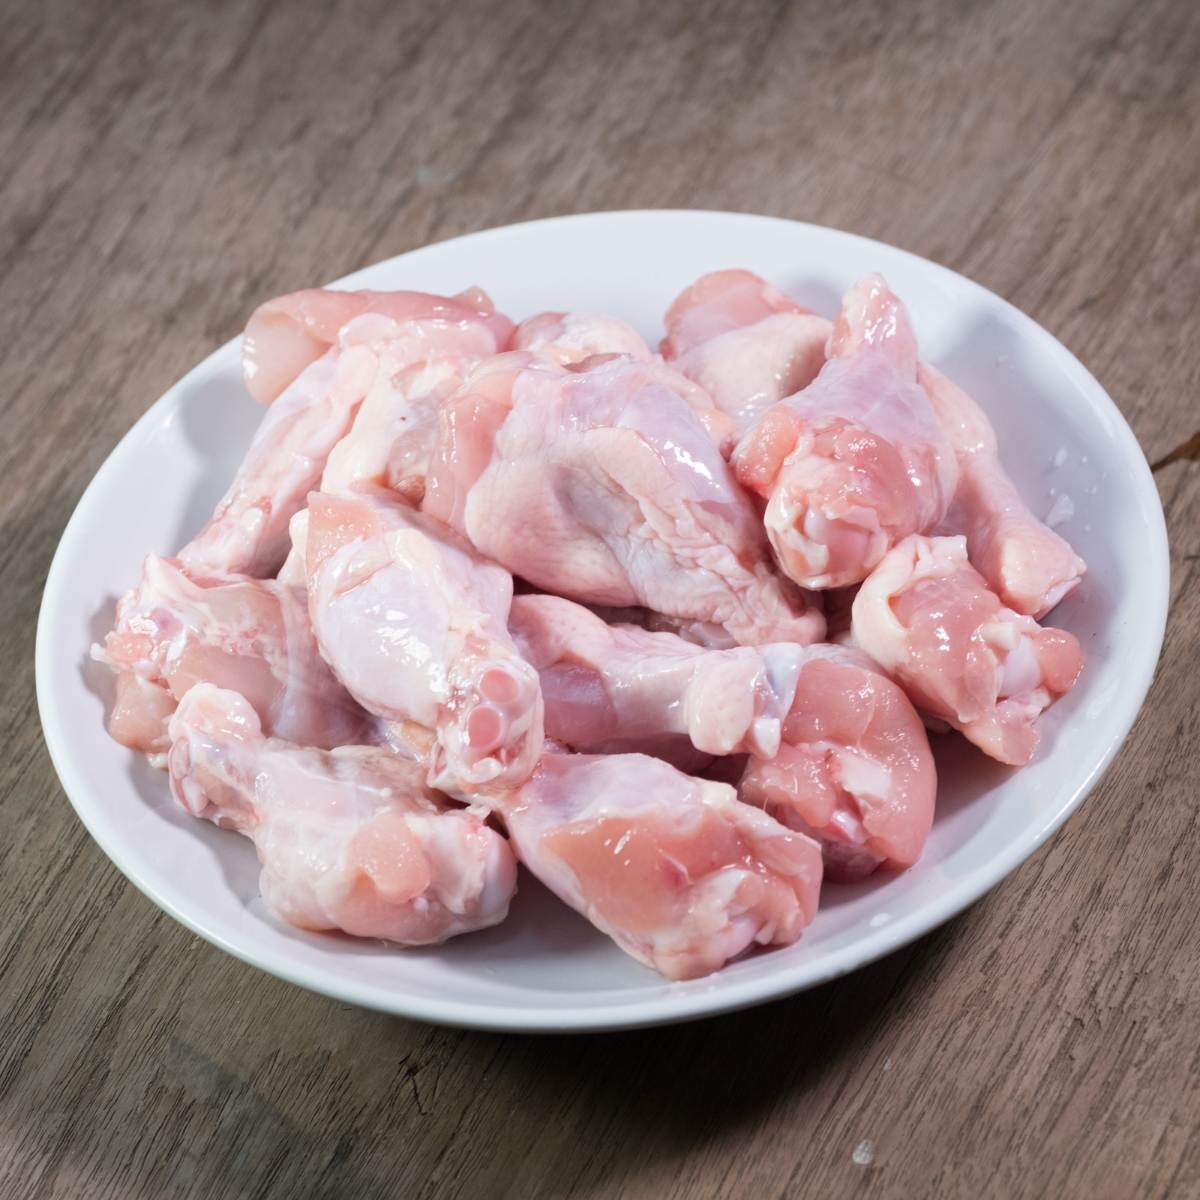 Split Chicken Wings - LARGE SIZE (8-10 PER LB)